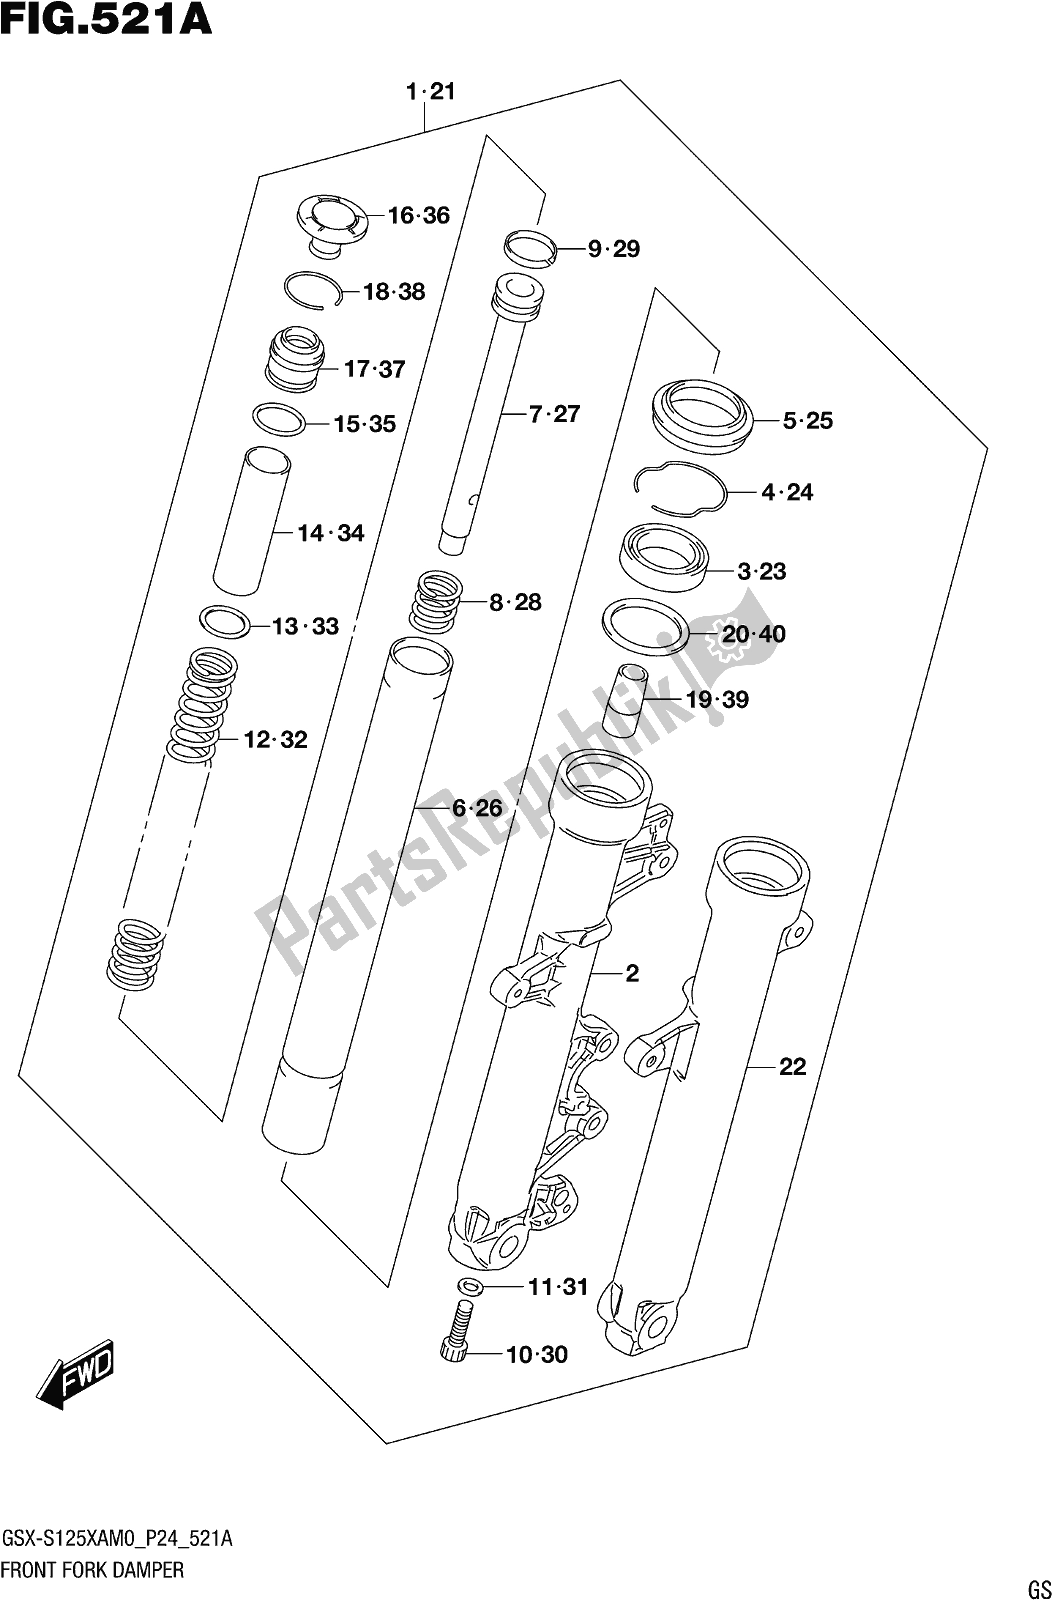 Tutte le parti per il Fig. 521a Front Fork Damper del Suzuki Gsx-s 125 XA 2020